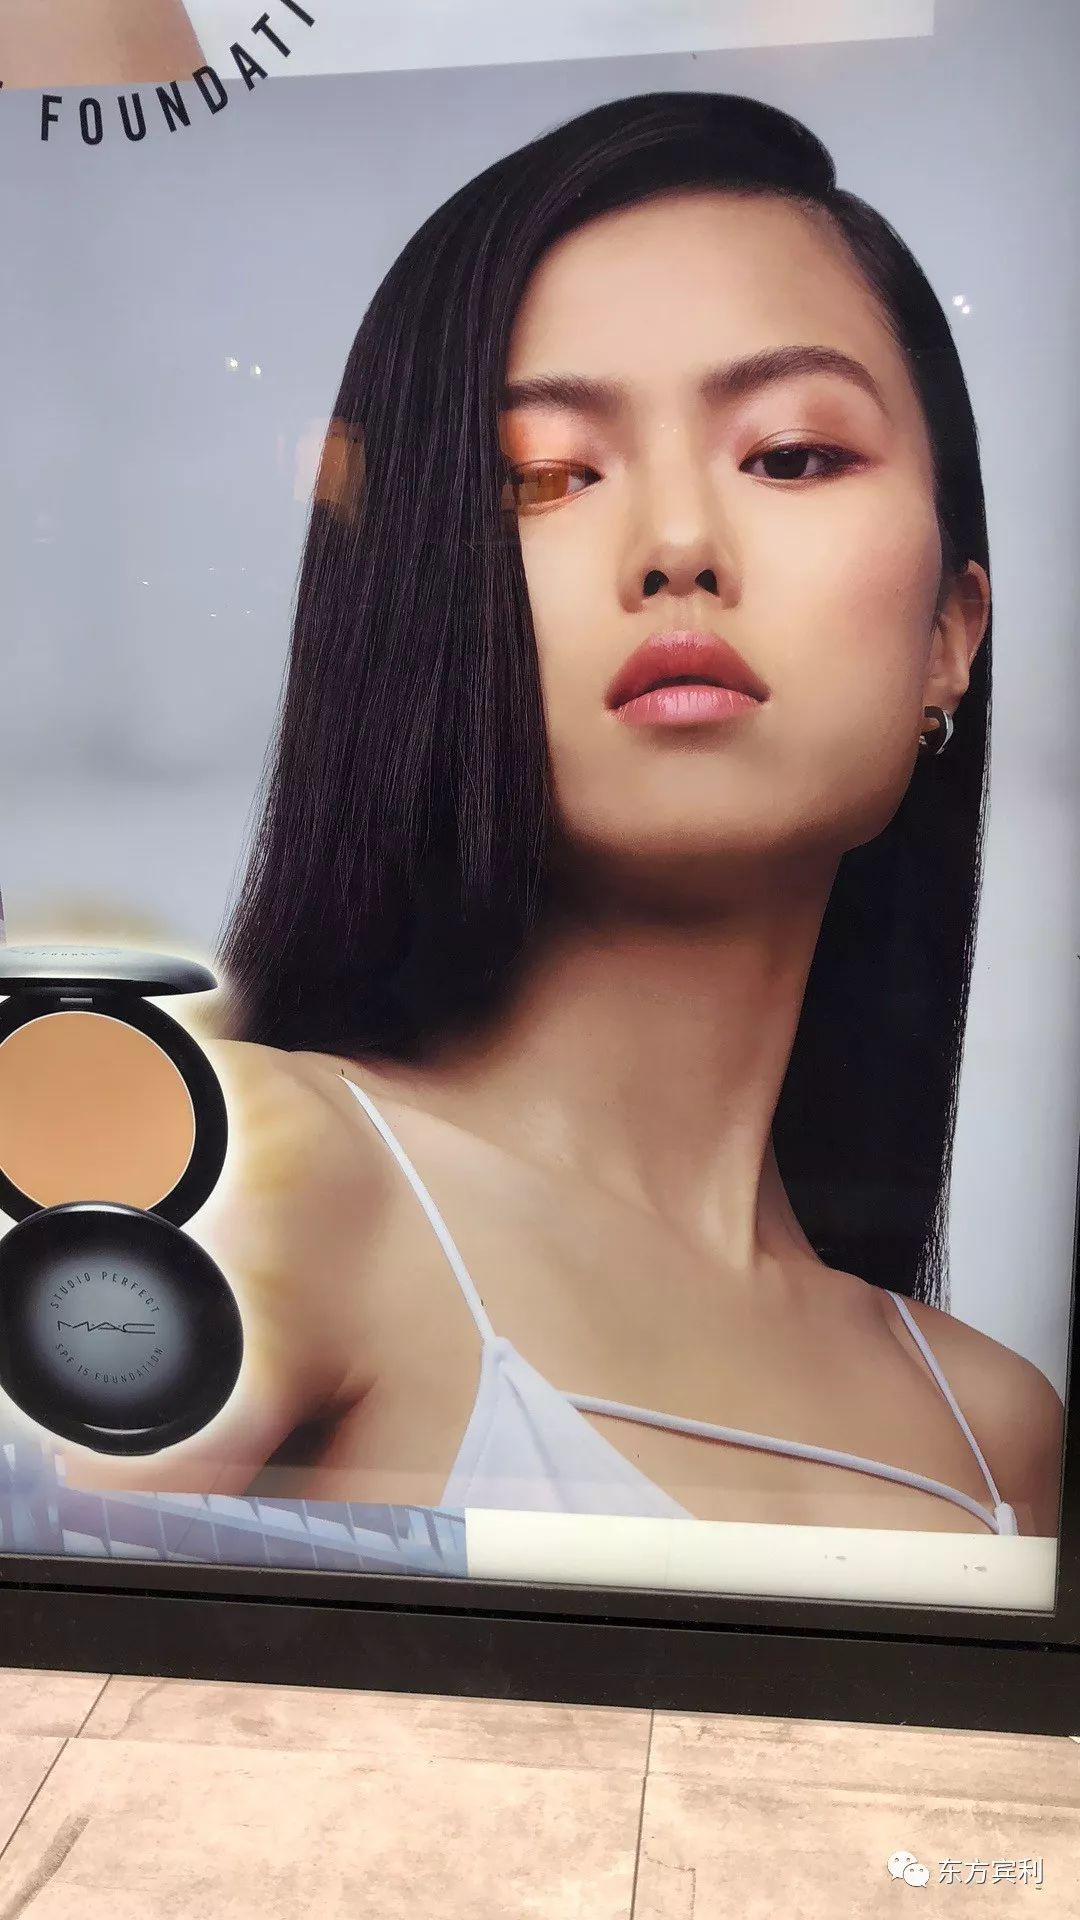 惹眼又出众,来看波司登2019春夏广告中的中国女孩!_苏可欣